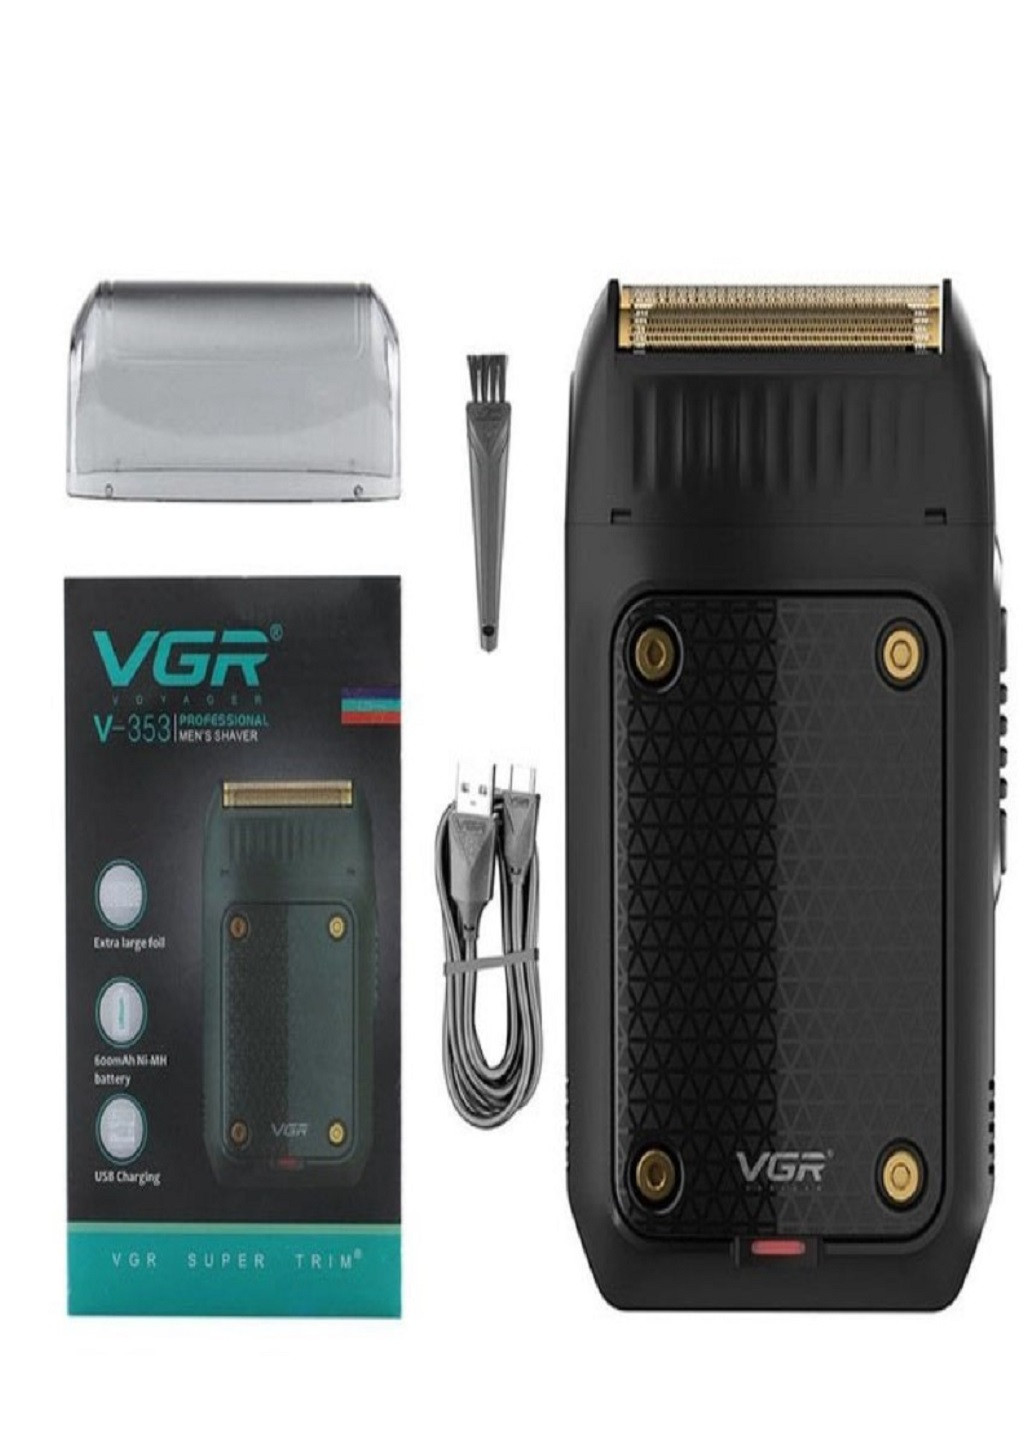 Электробритва V-353 бритва аккумуляторная VGR (277979679)